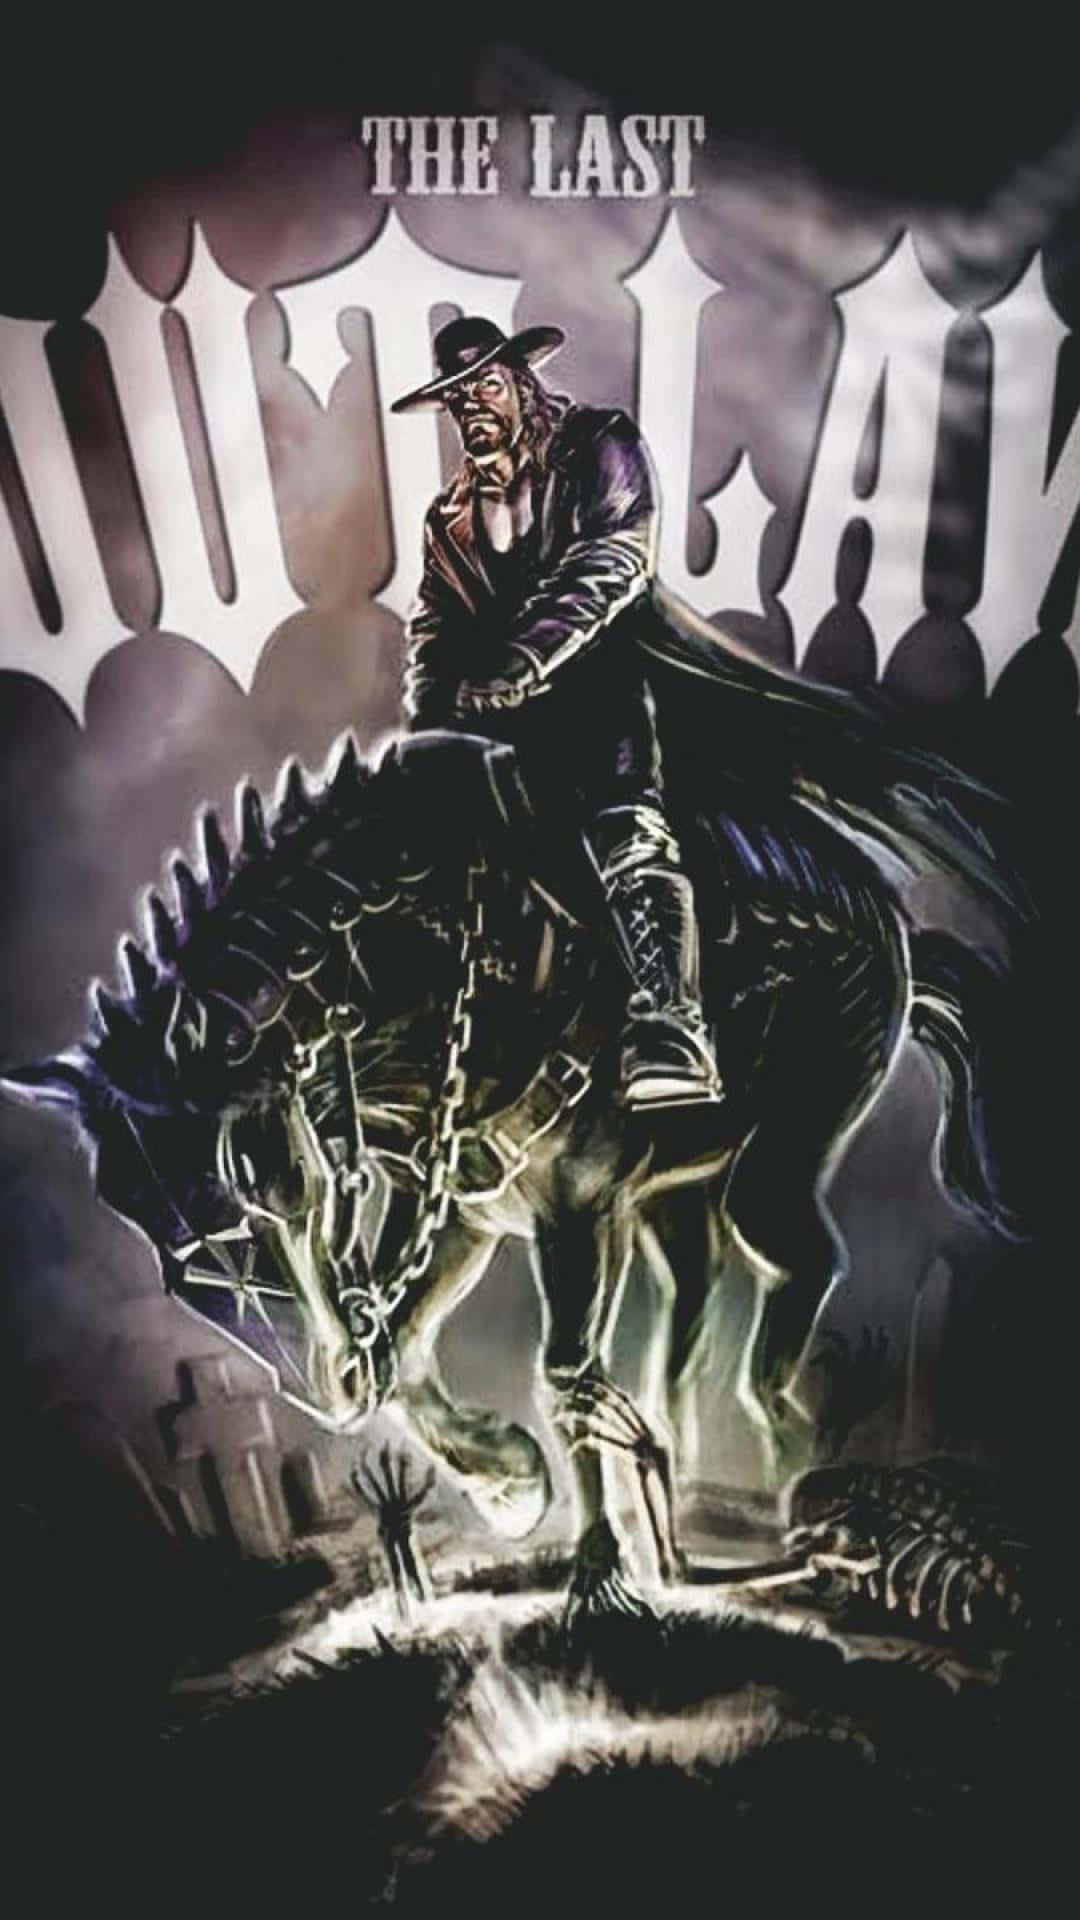 The Last Outlaw Wwe Undertaker Wallpaper